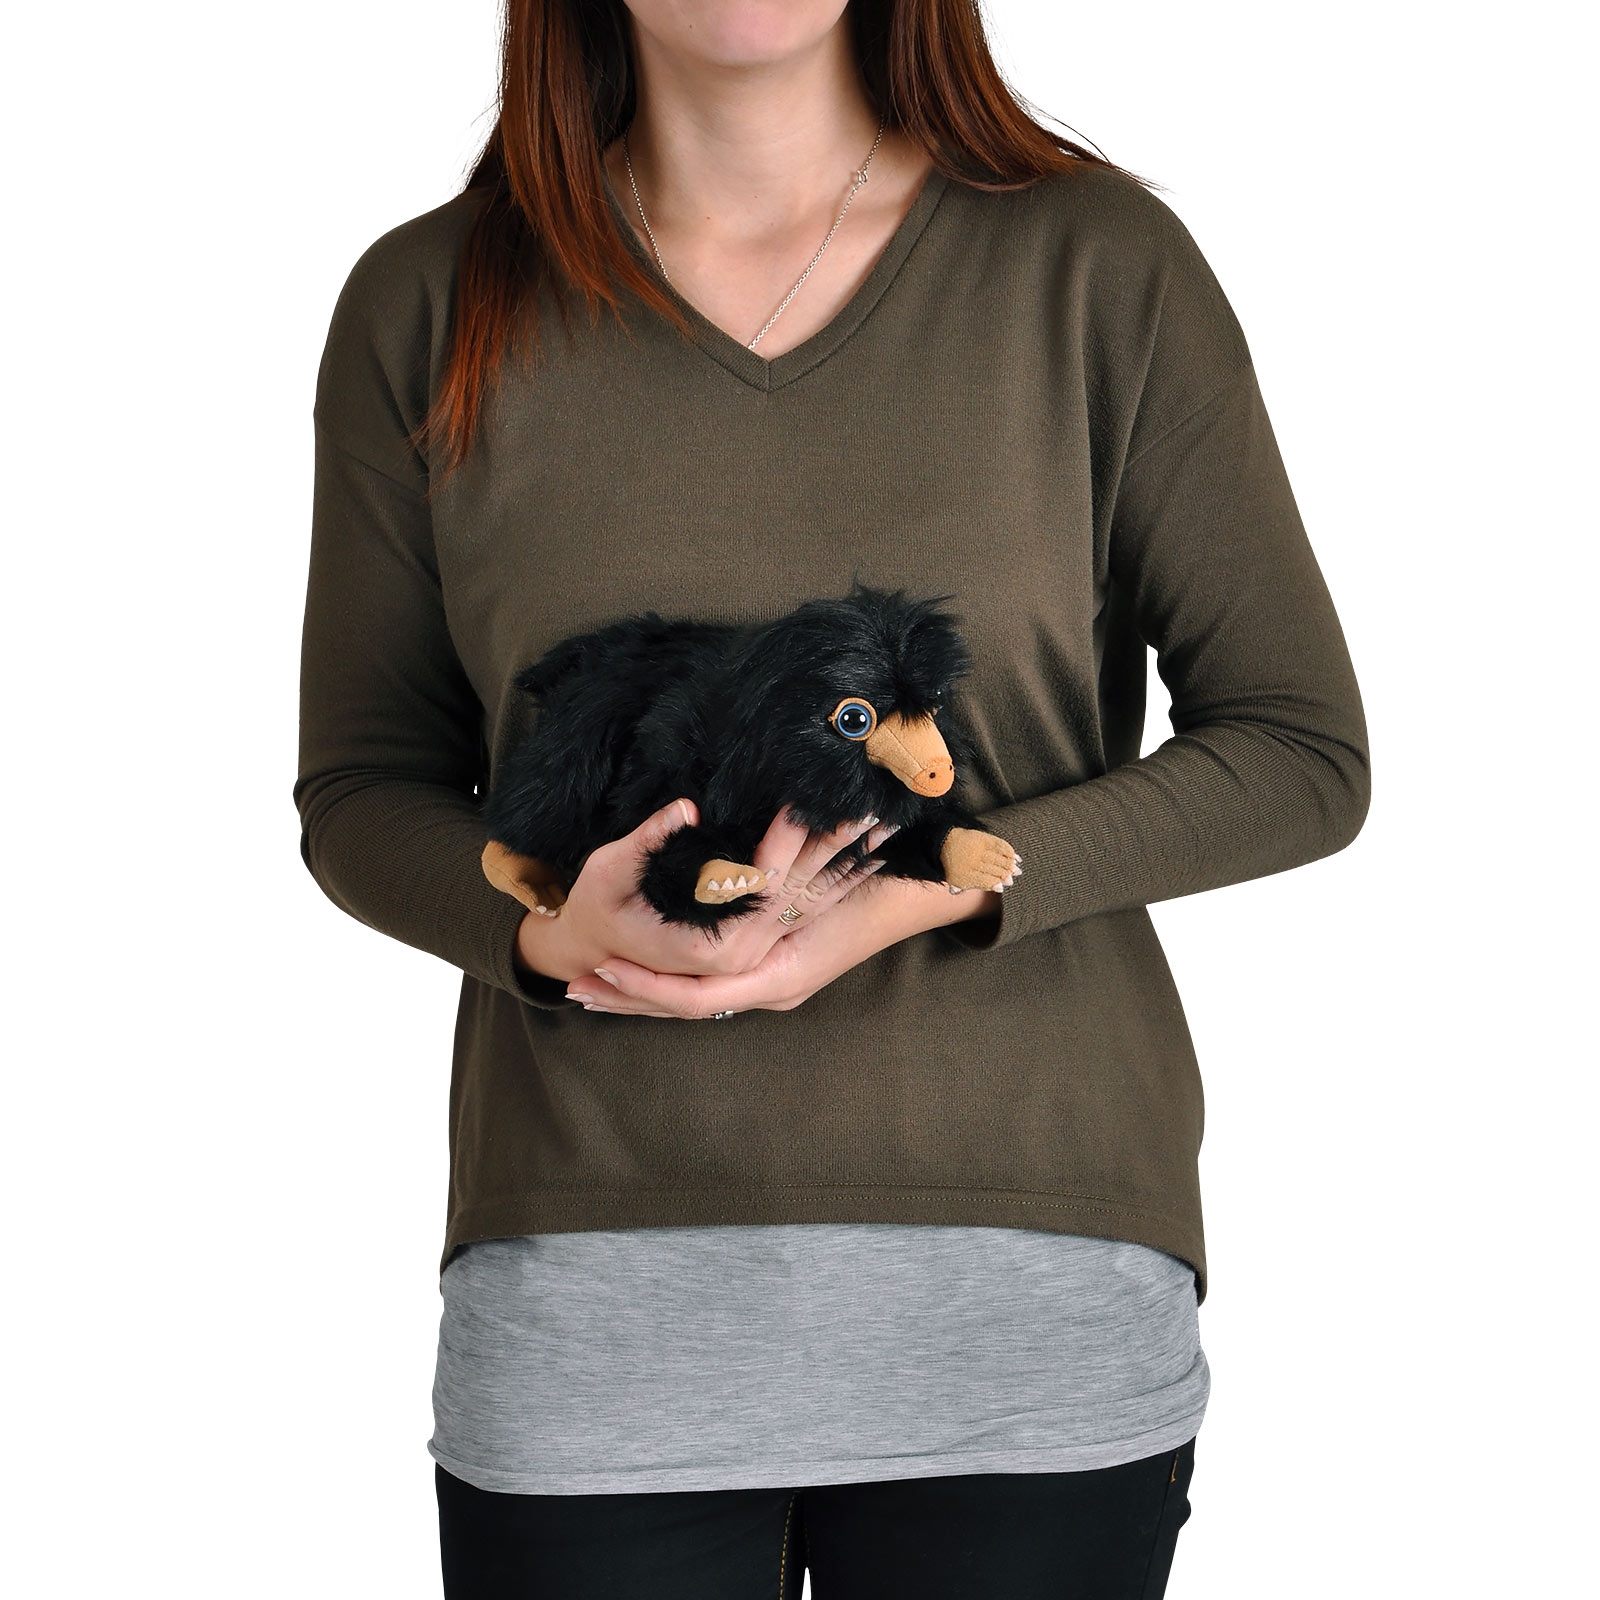 Baby Niffler Plüsch Figur 22 cm schwarz - Phantastische Tierwesen